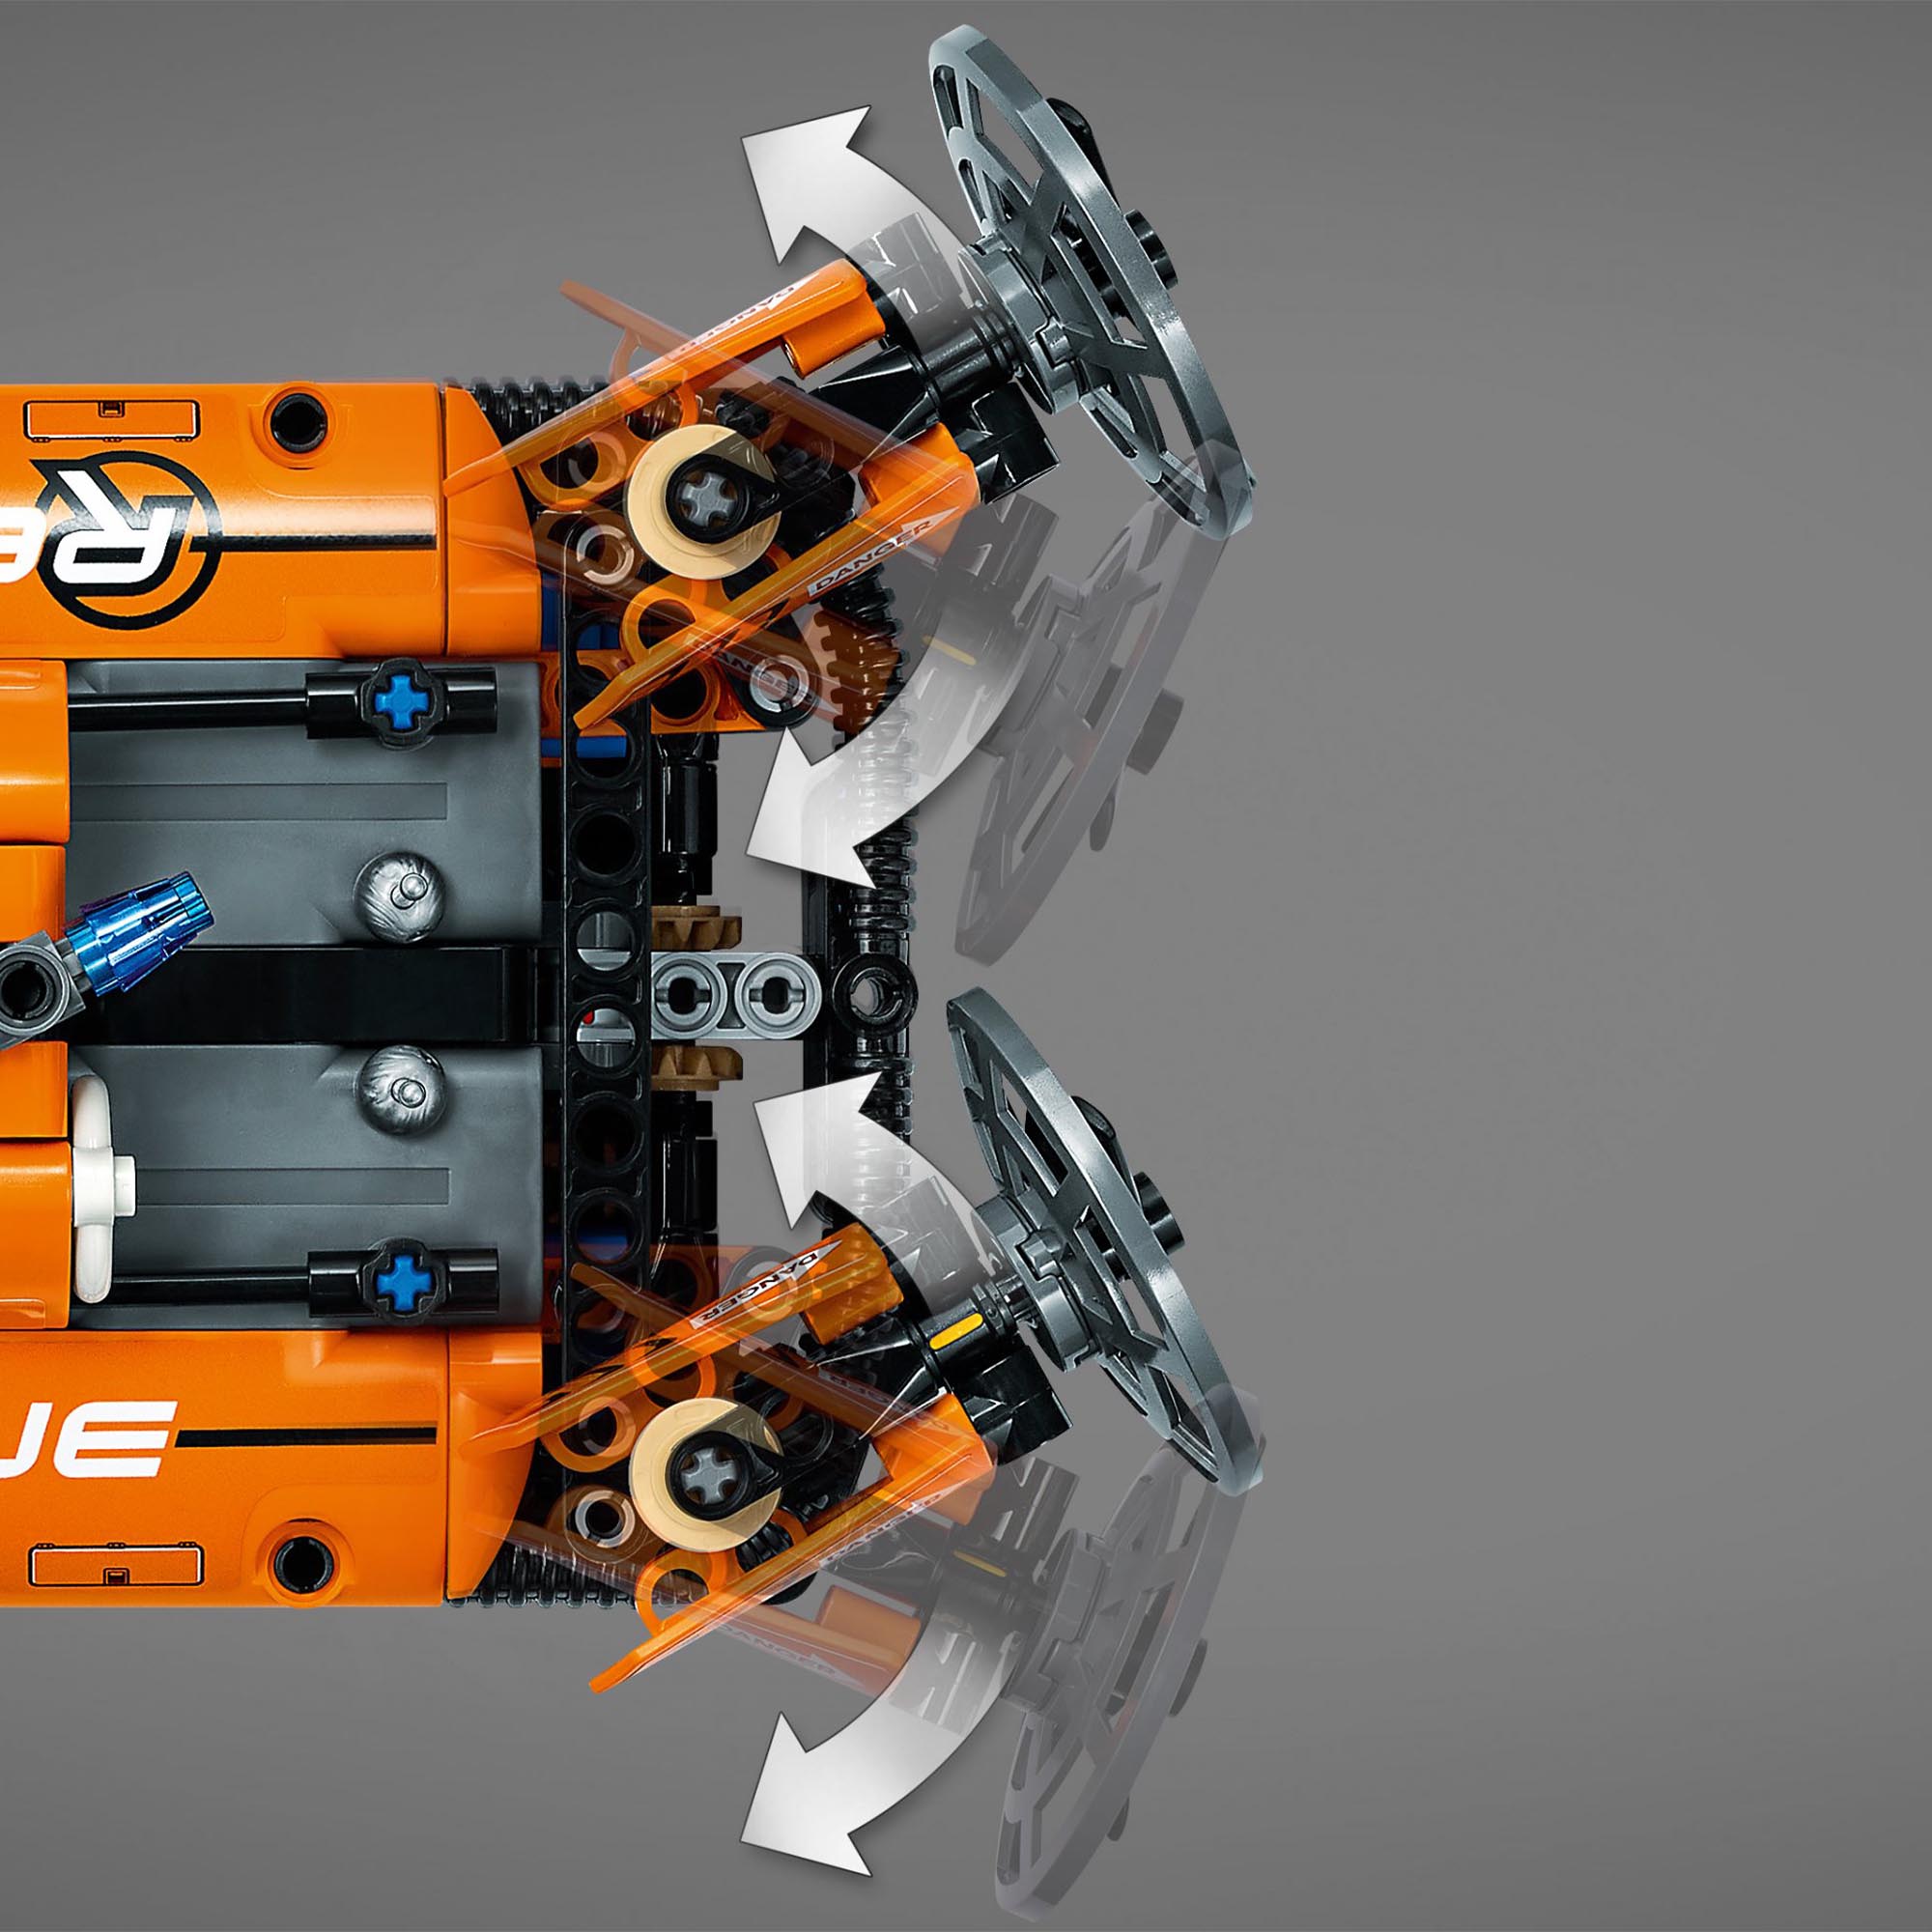 LEGO Technic Hovercraft di Salvataggio, Aereo, Kit di Costruzione 2 in 1, Veicol 42120, , large